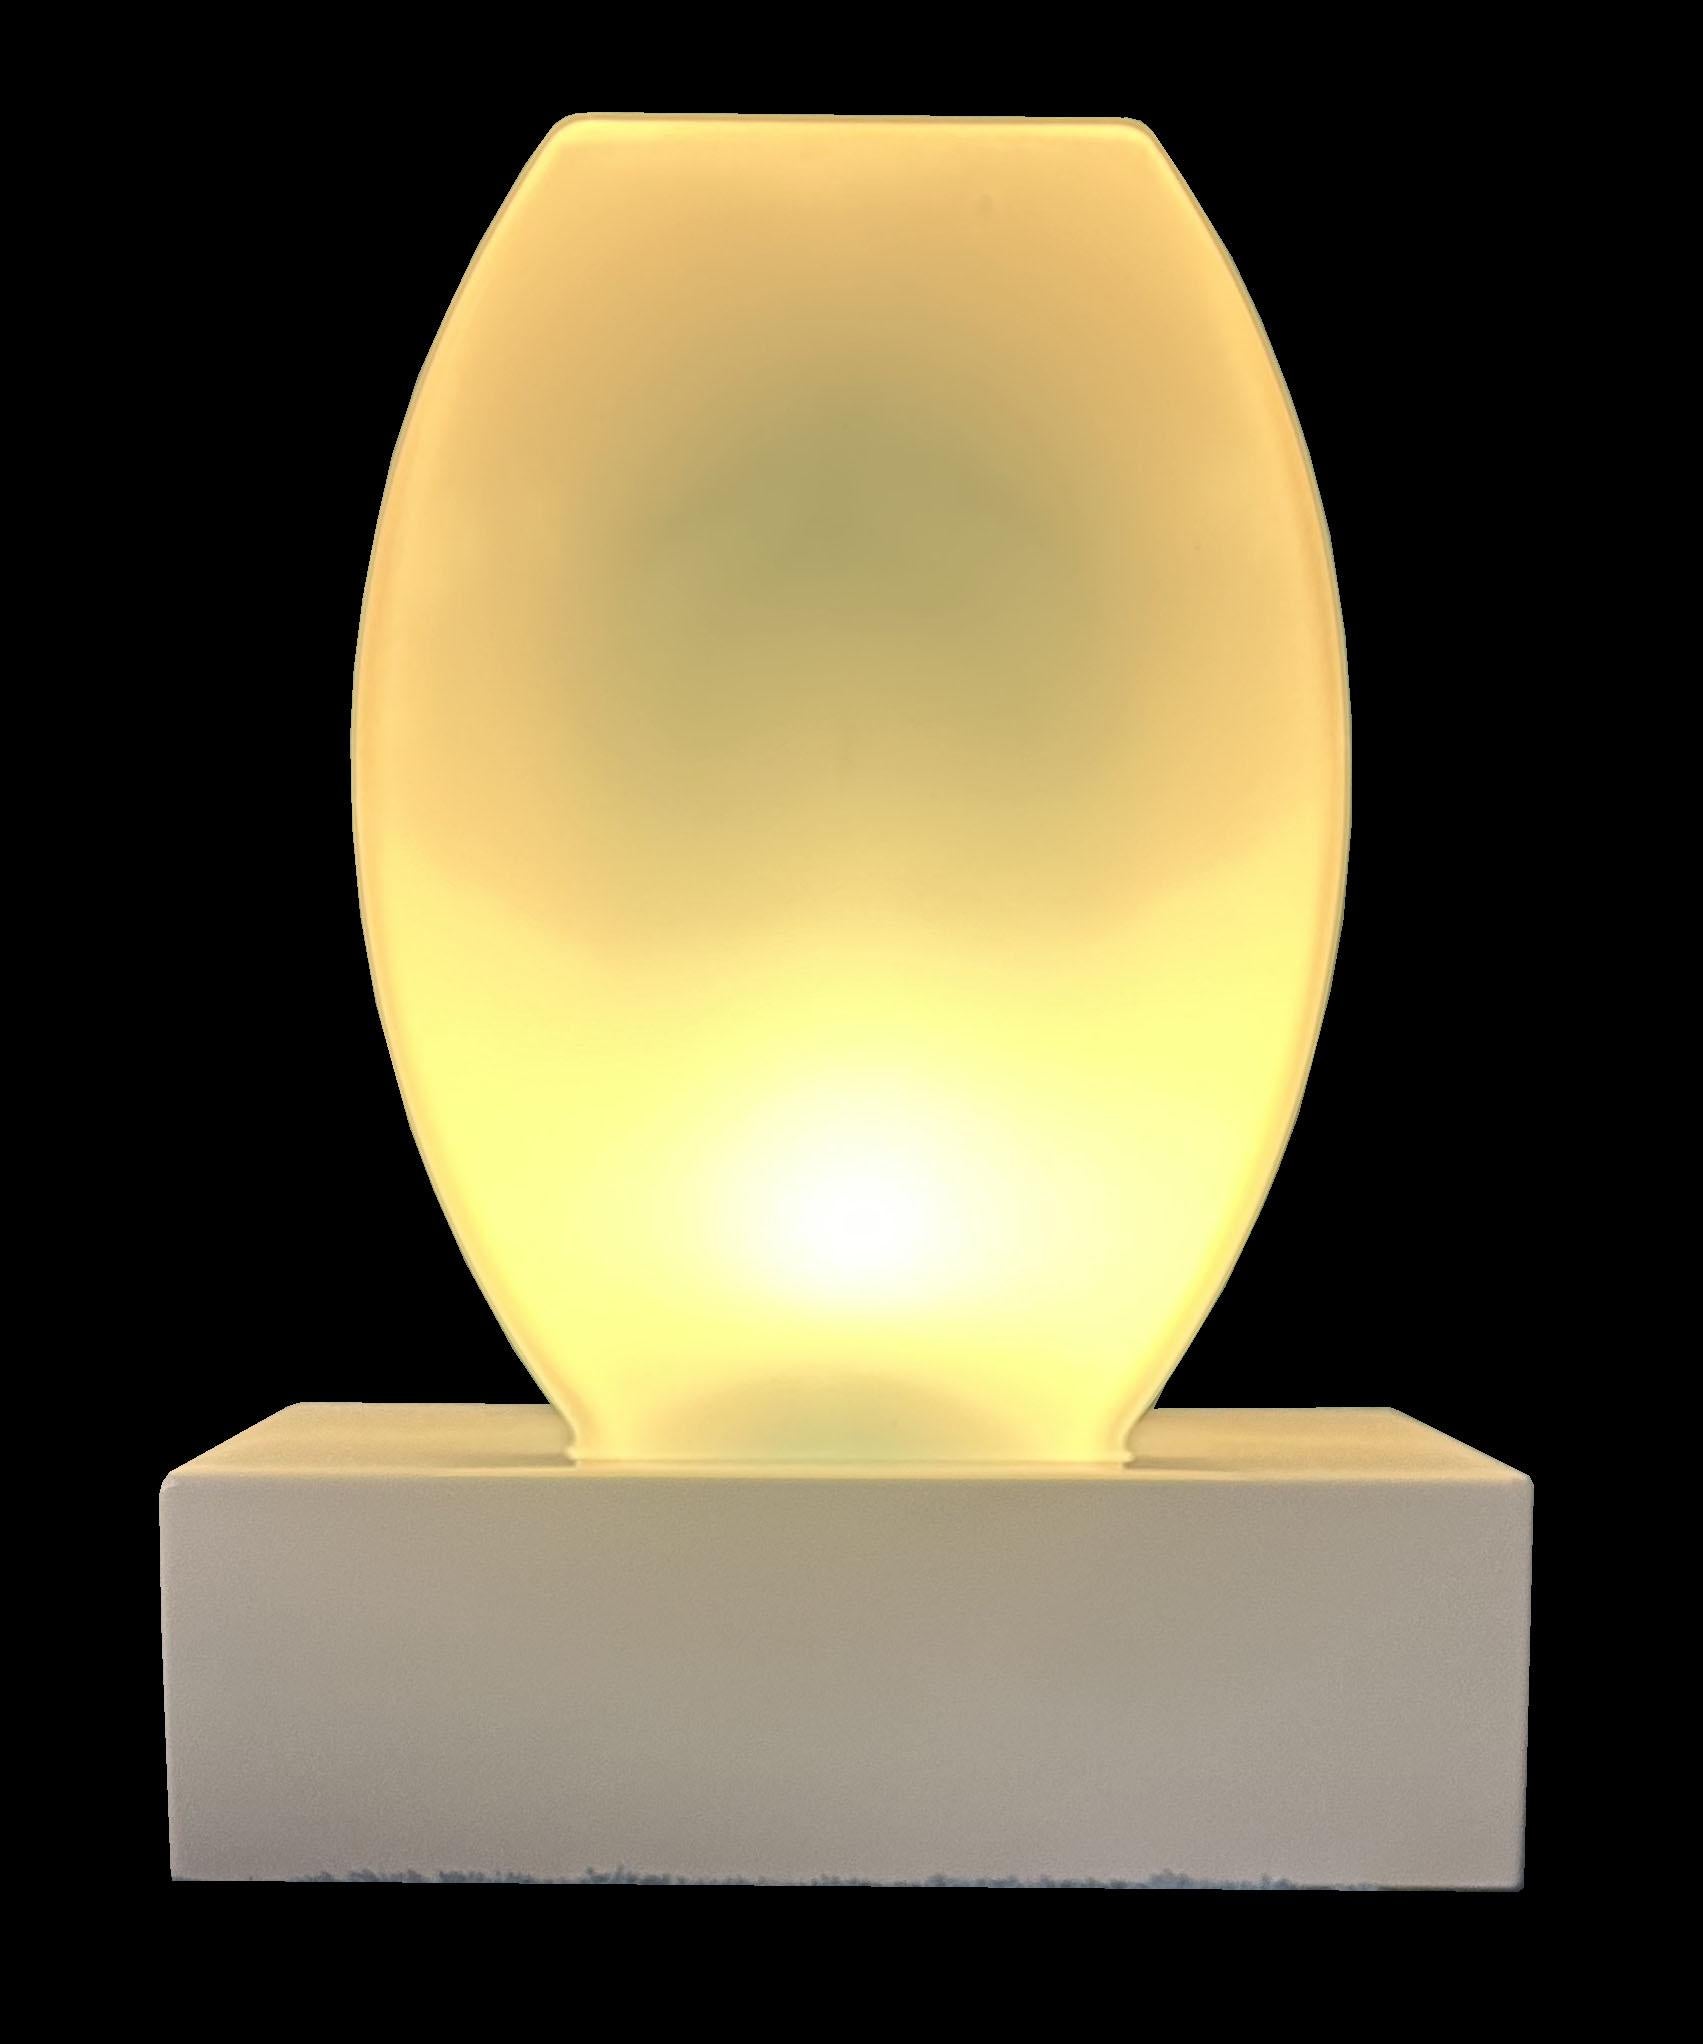 Metal Dorane Table Lamp by Etorre Sottsass for Stilnovo in Original Box For Sale